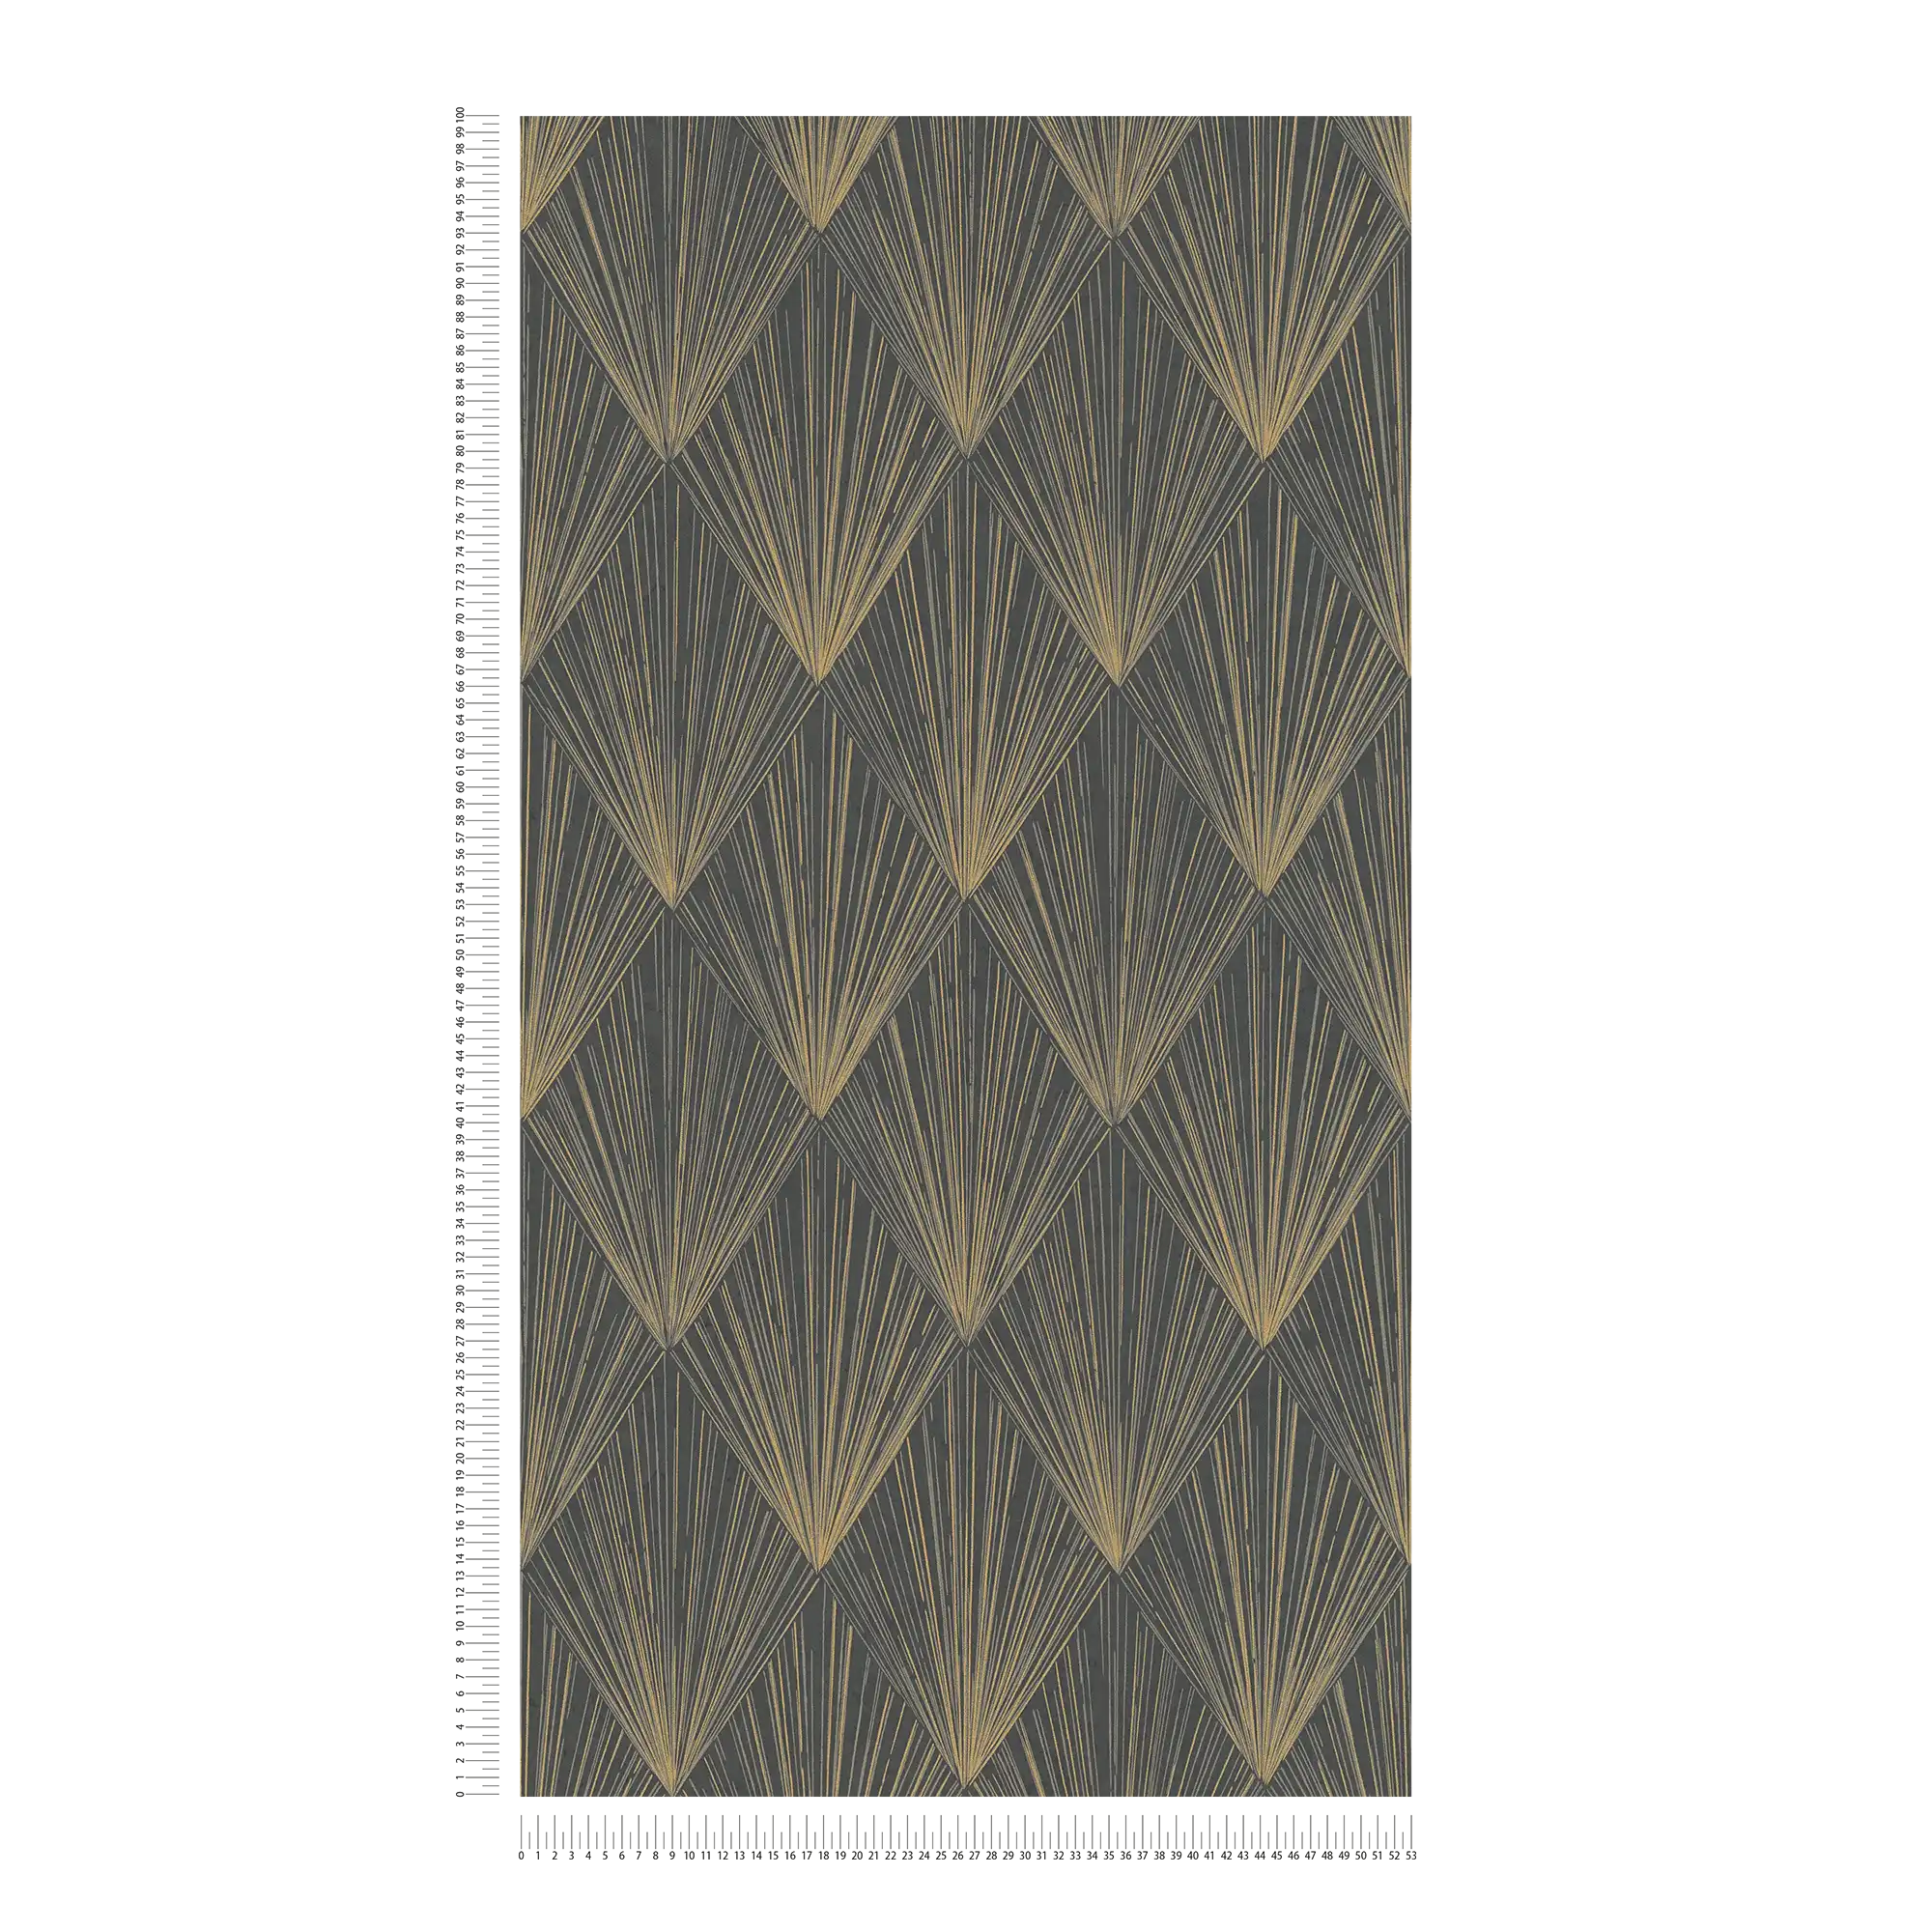             Zwart vliesbehang met metallic patroon - beige, metallic, zwart
        